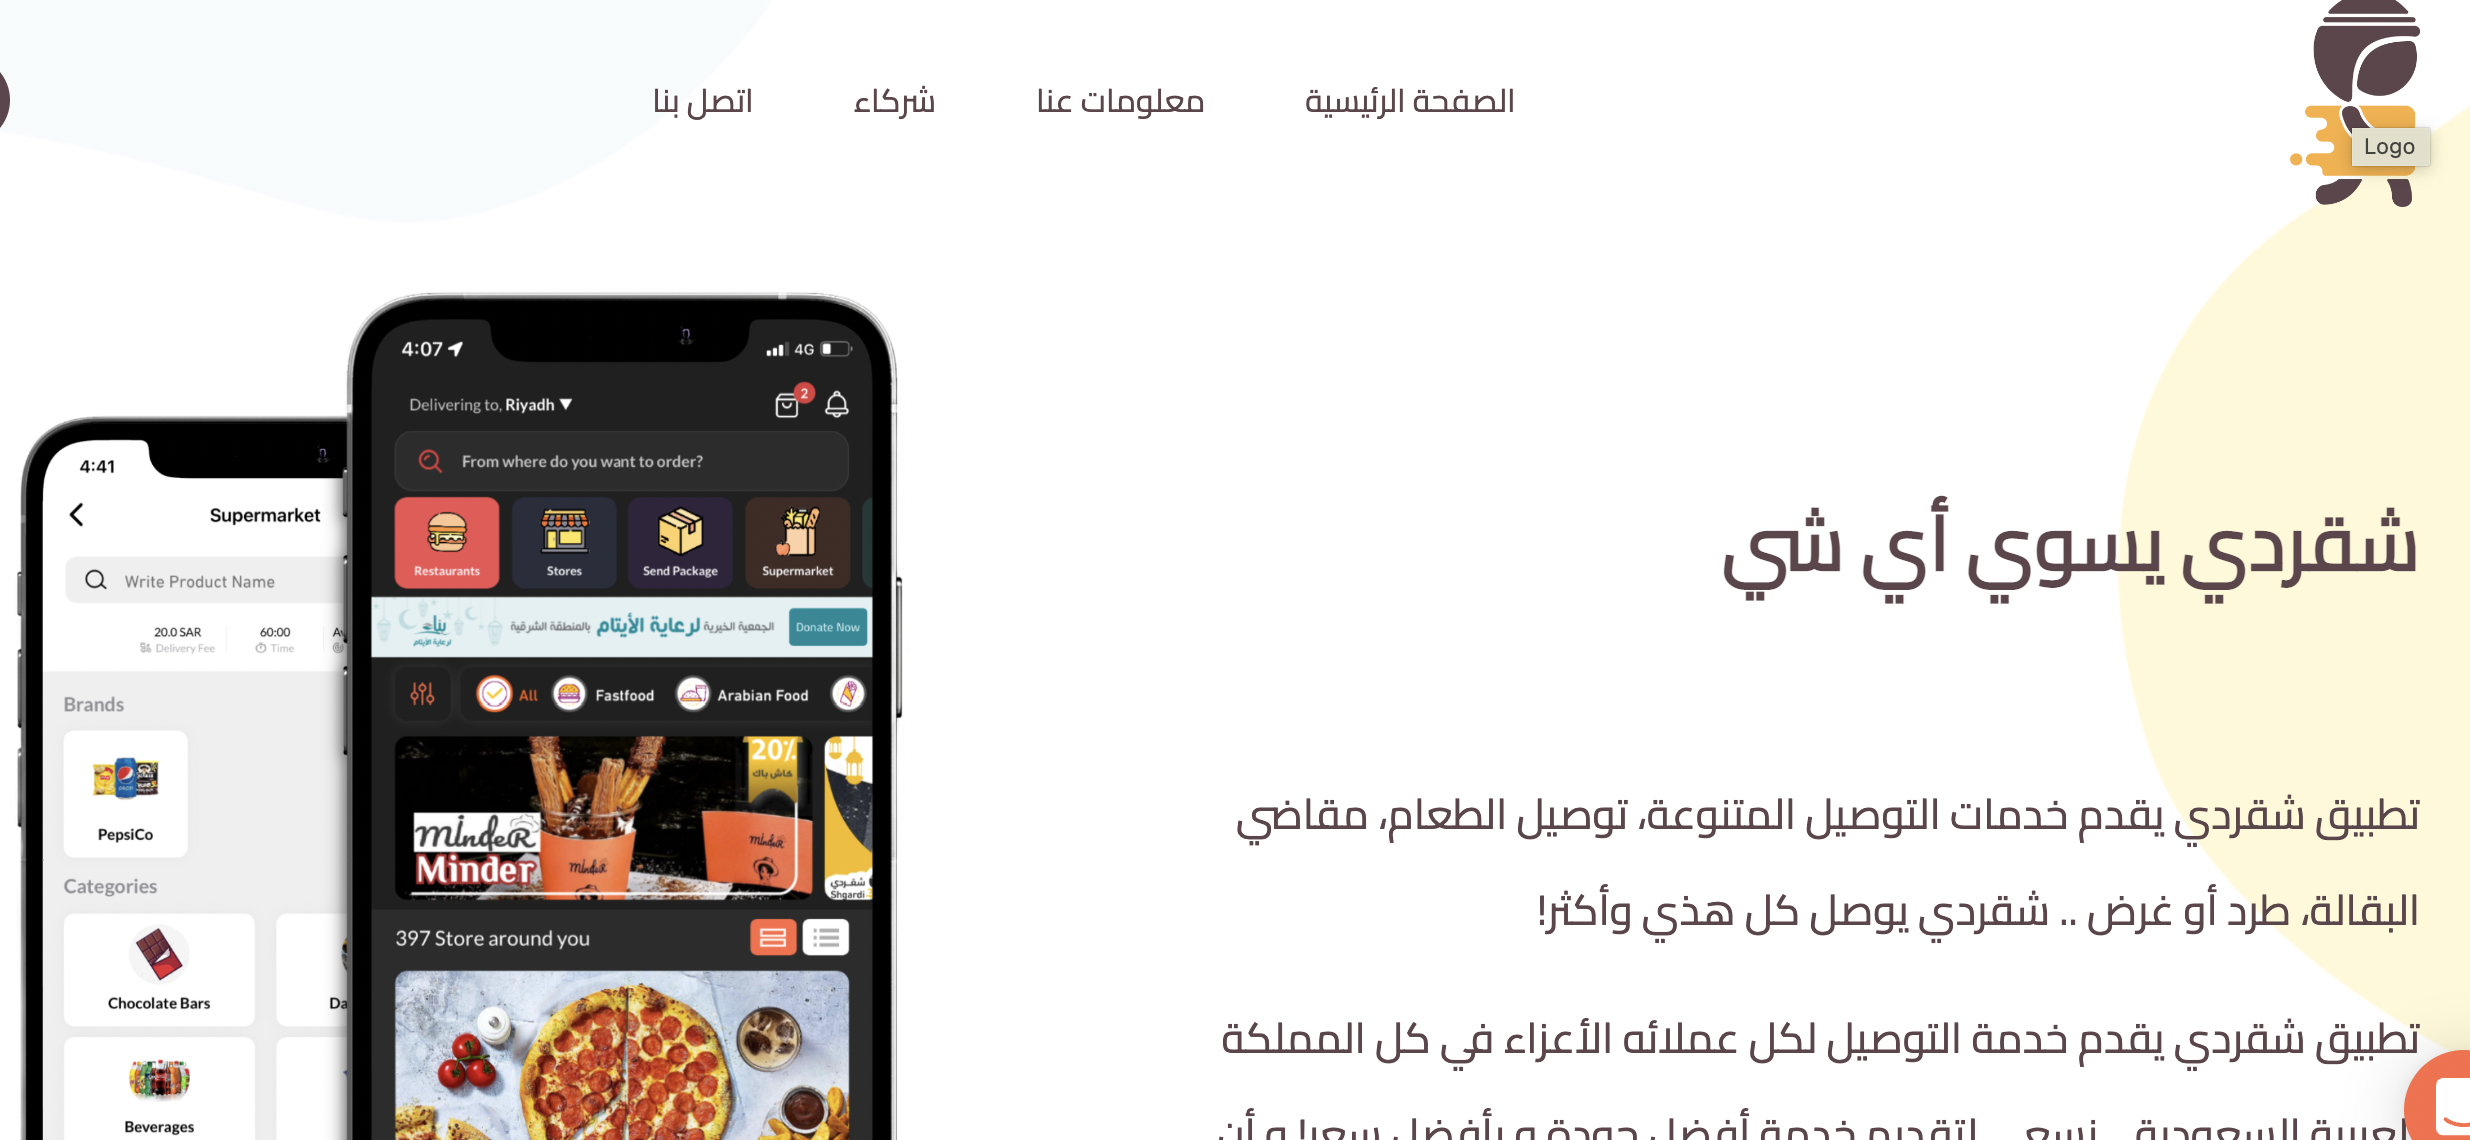 تطبيق شقردي للتوصيل في المملكة العربية السعودية